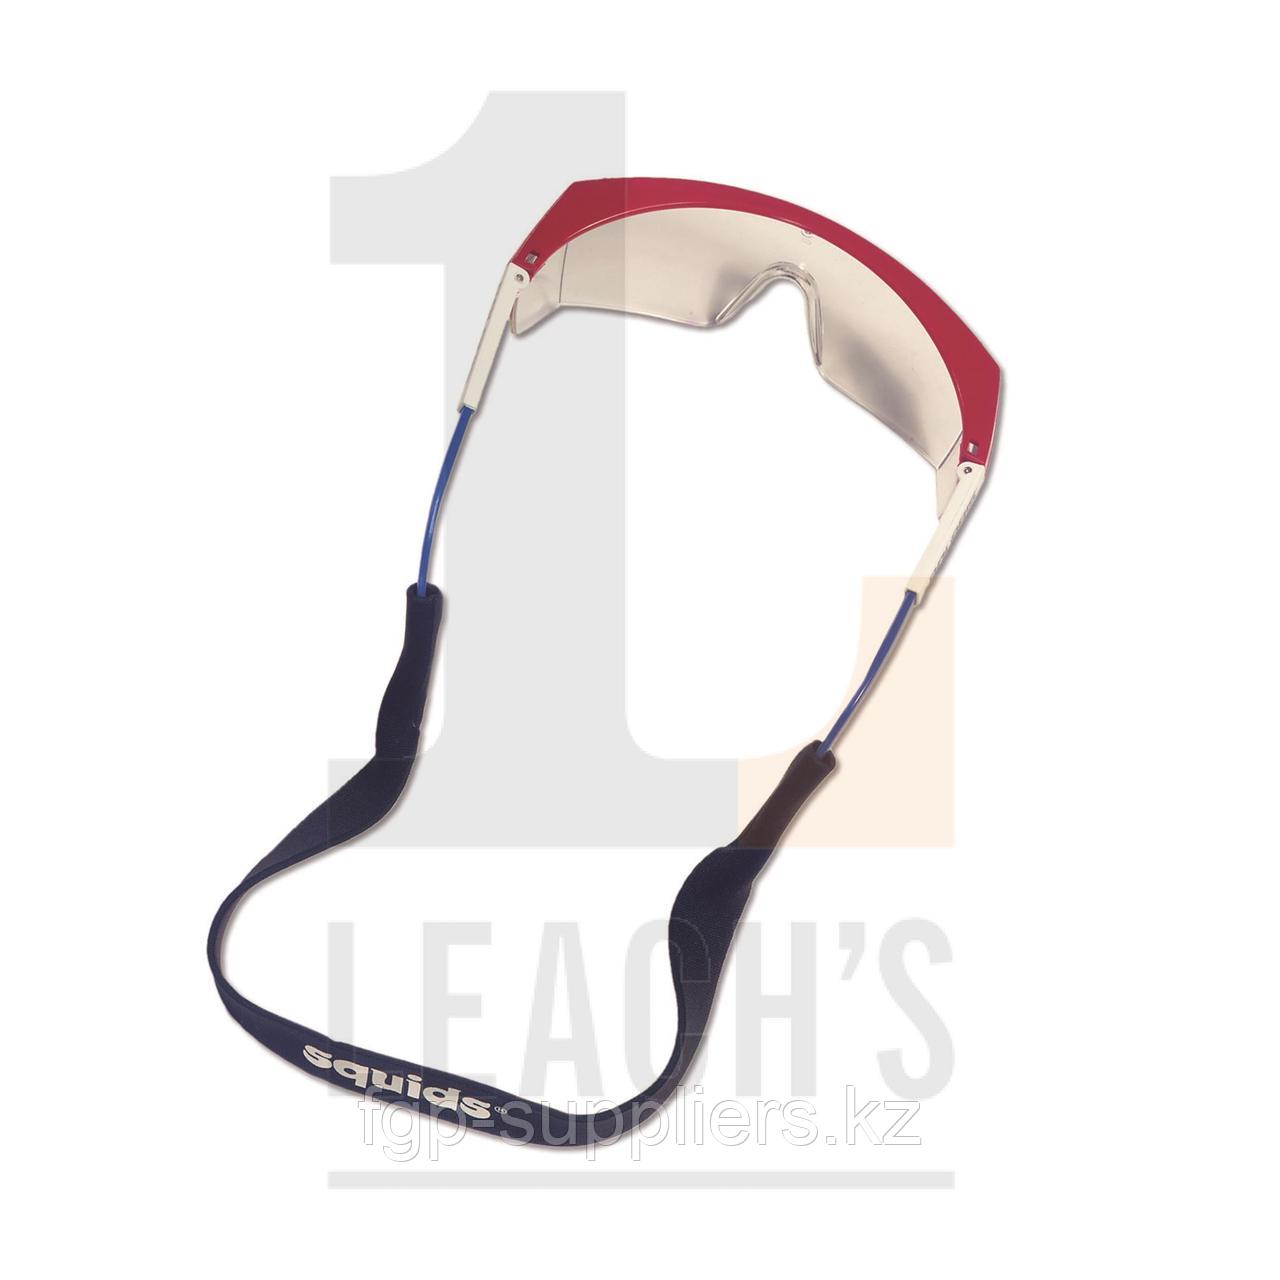 Safety Specs with neck cord / Защитные очки со шнурком